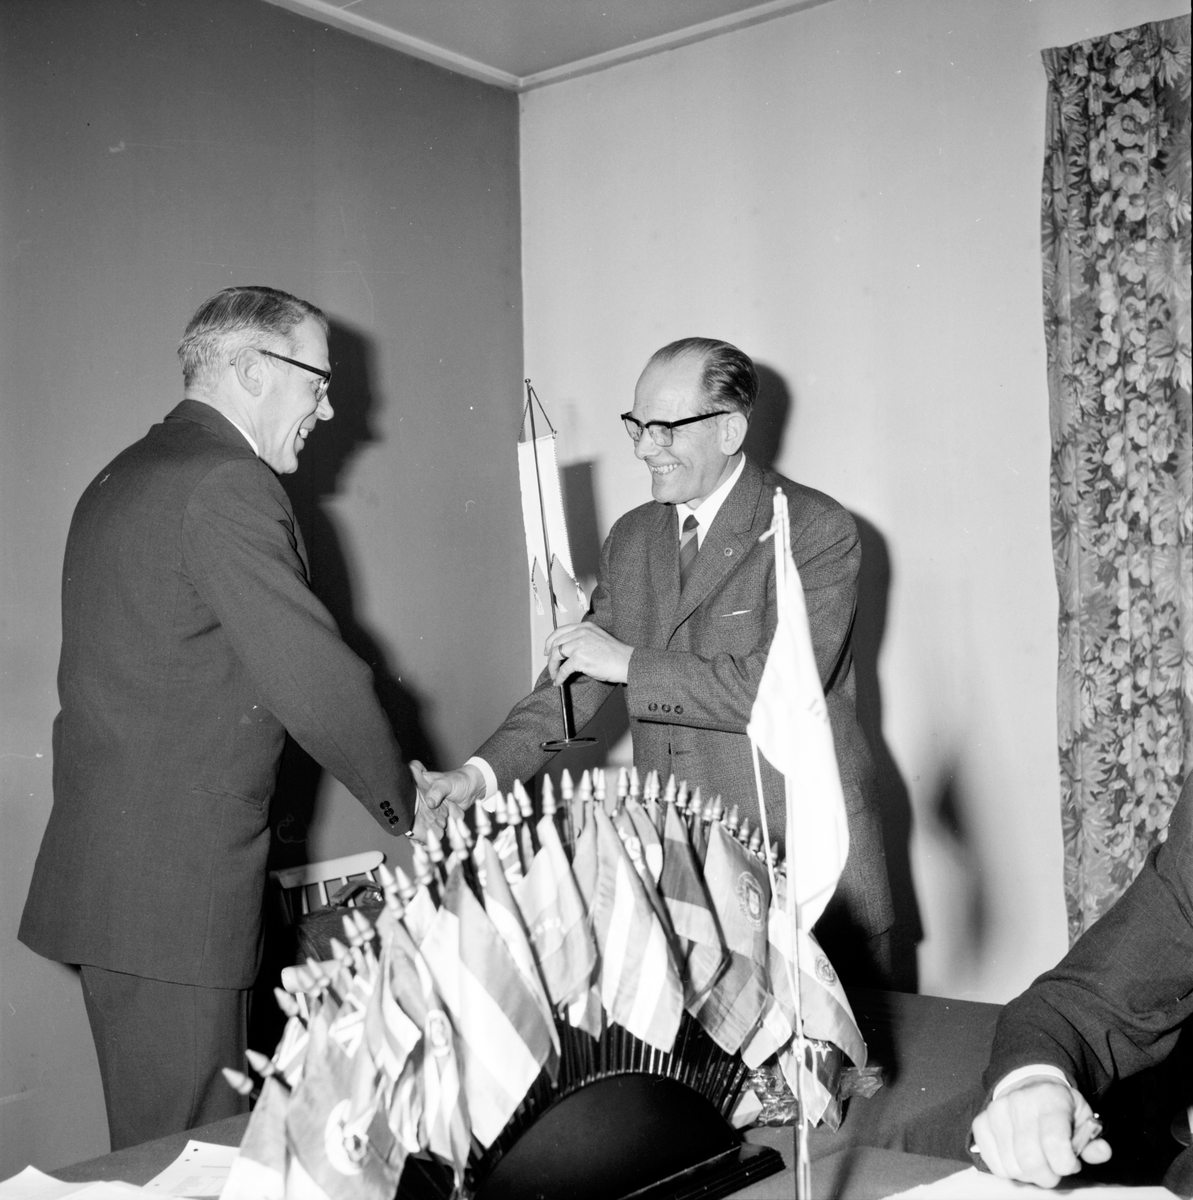 Arbrå, Evald Strömstedt och Johan Persson.
Lions club sammanträde,
20 Februari 1967